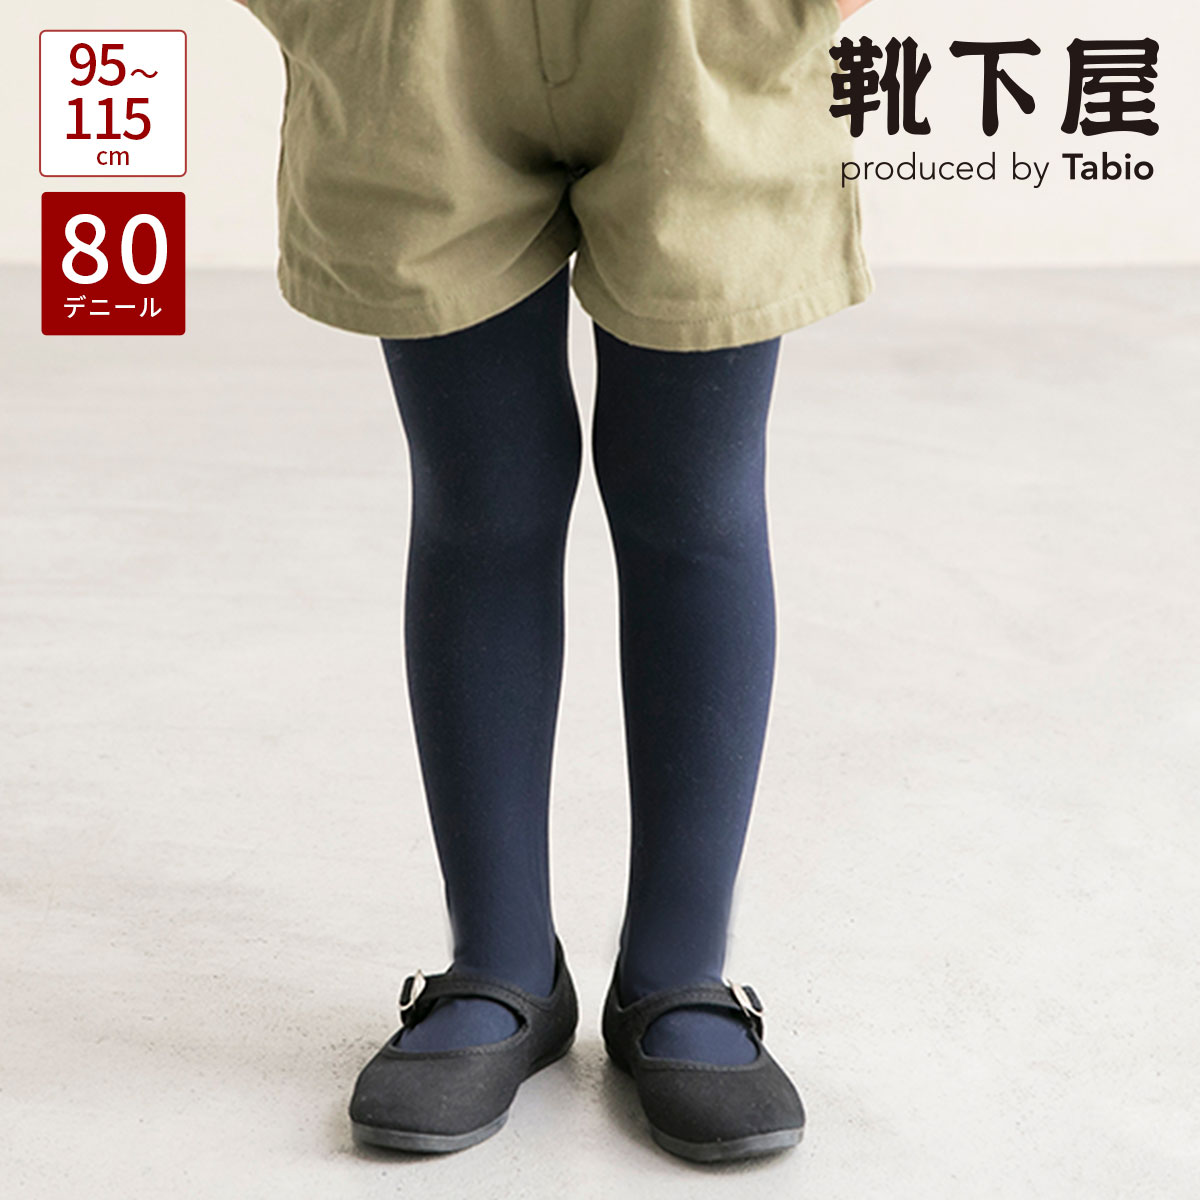  キッズ 80デニールスポンディッシュタイツ105cm(95〜115cm)   靴下 タビオ Tabio くつ下 キッズ 子供 子供用靴下 カラータイツ フォーマル 発表会 女の子 日本製